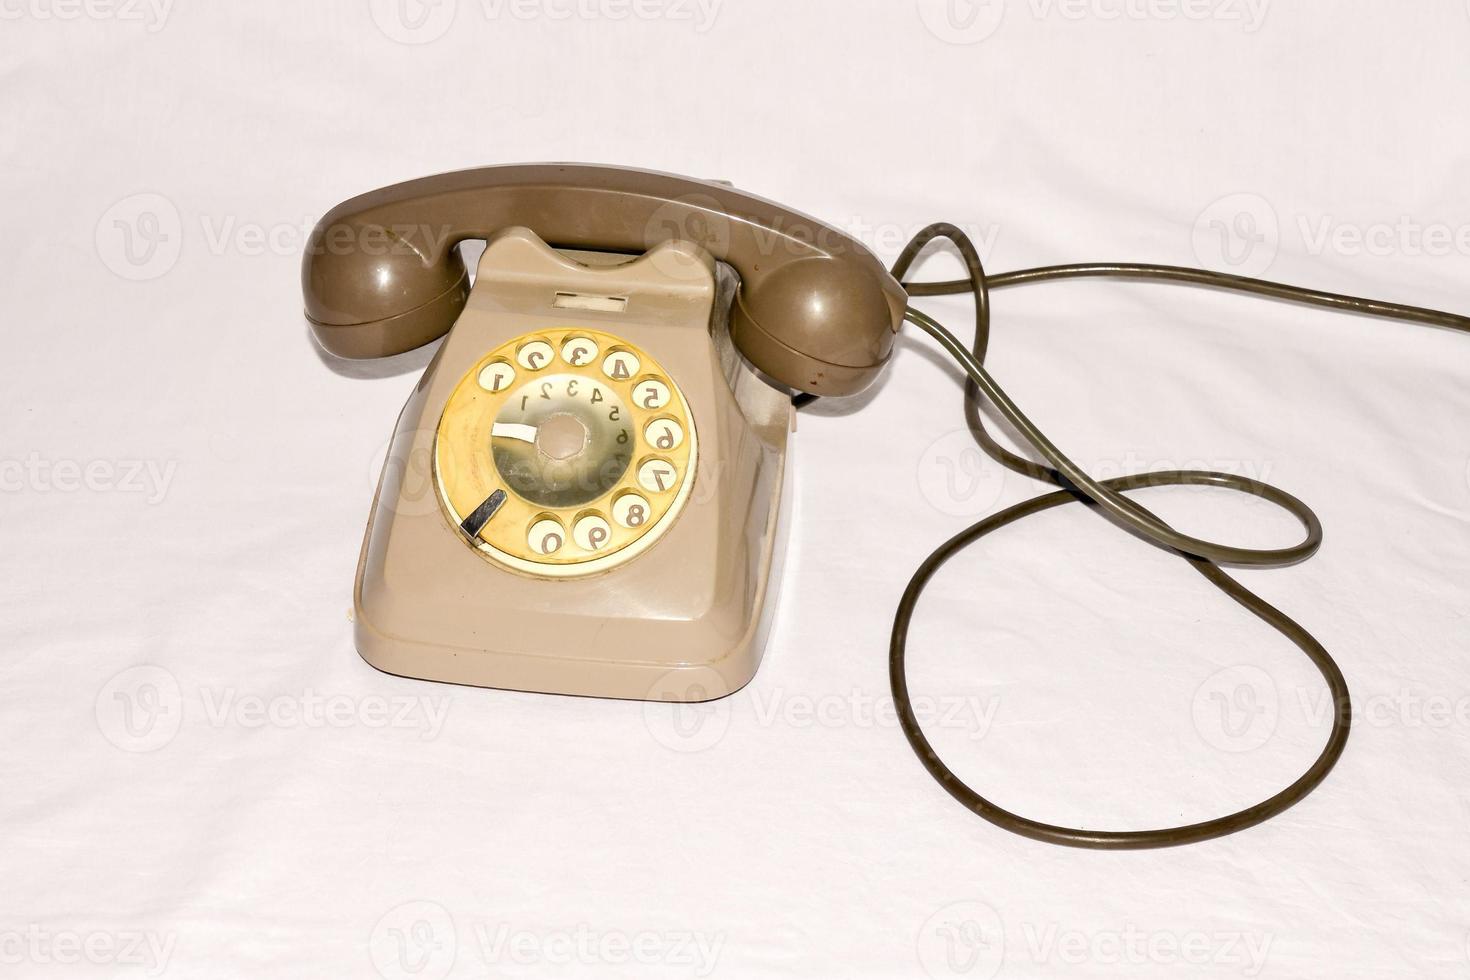 gammal telefon på vit bakgrund foto